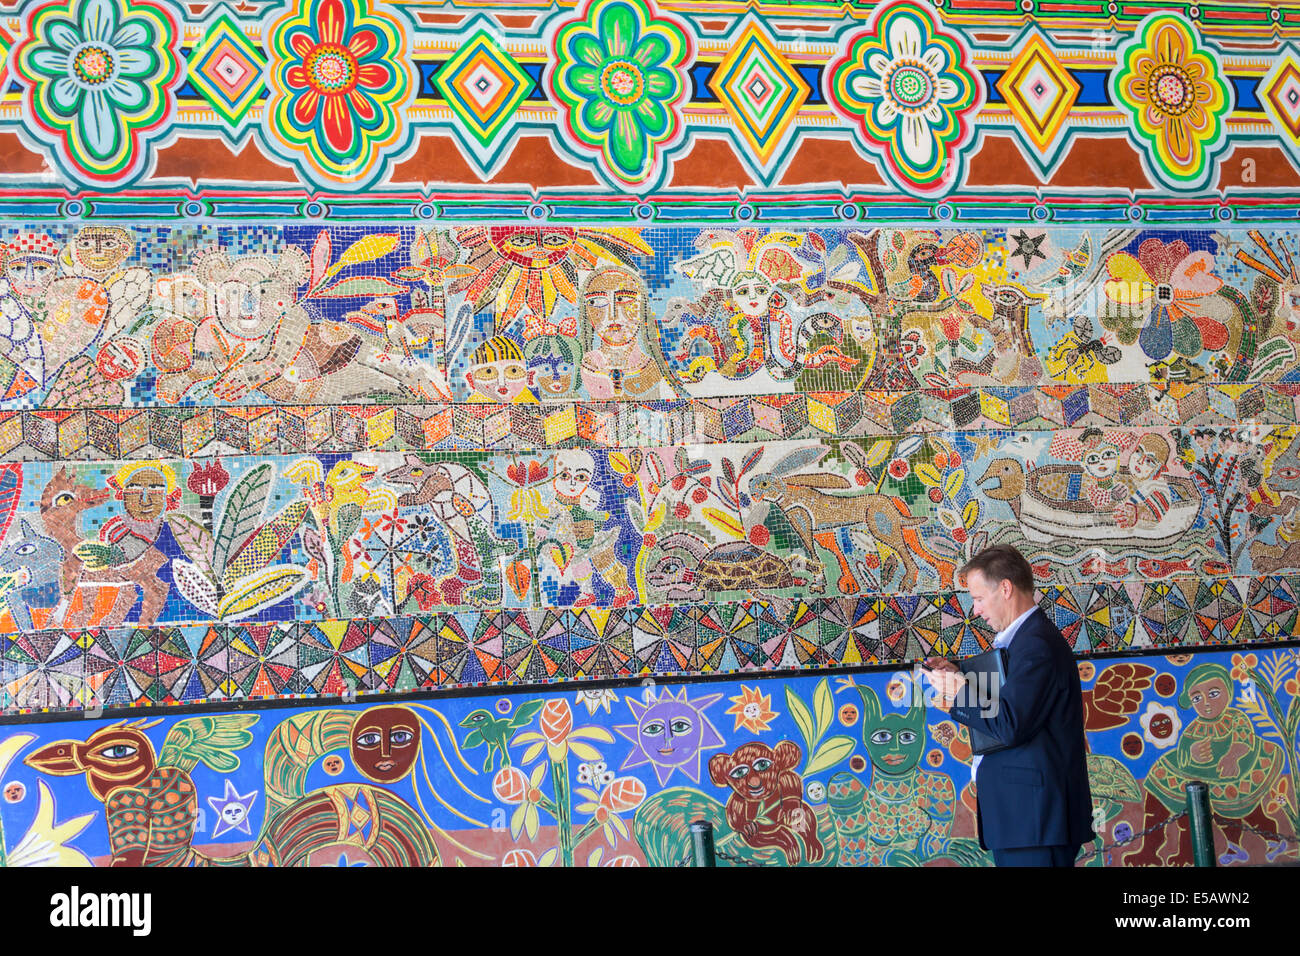 Mosaico murale immagini e fotografie stock ad alta risoluzione - Alamy